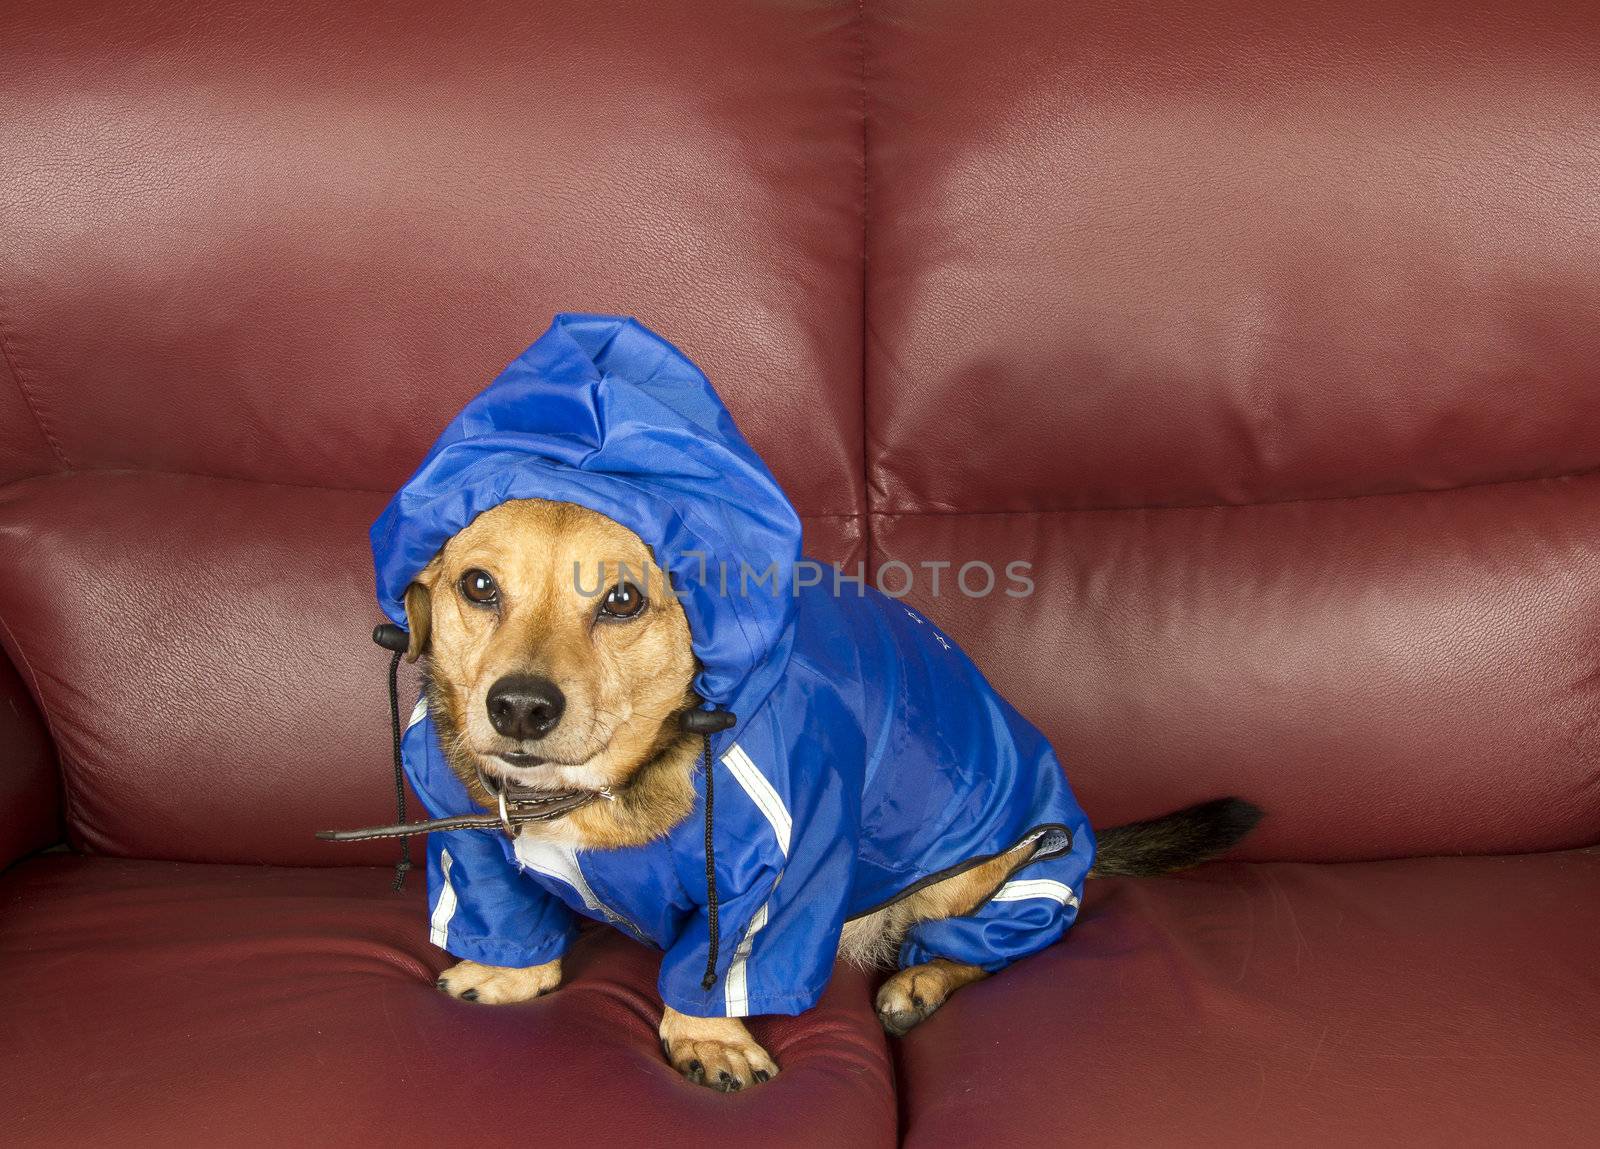 rain dog by danilobiancalana